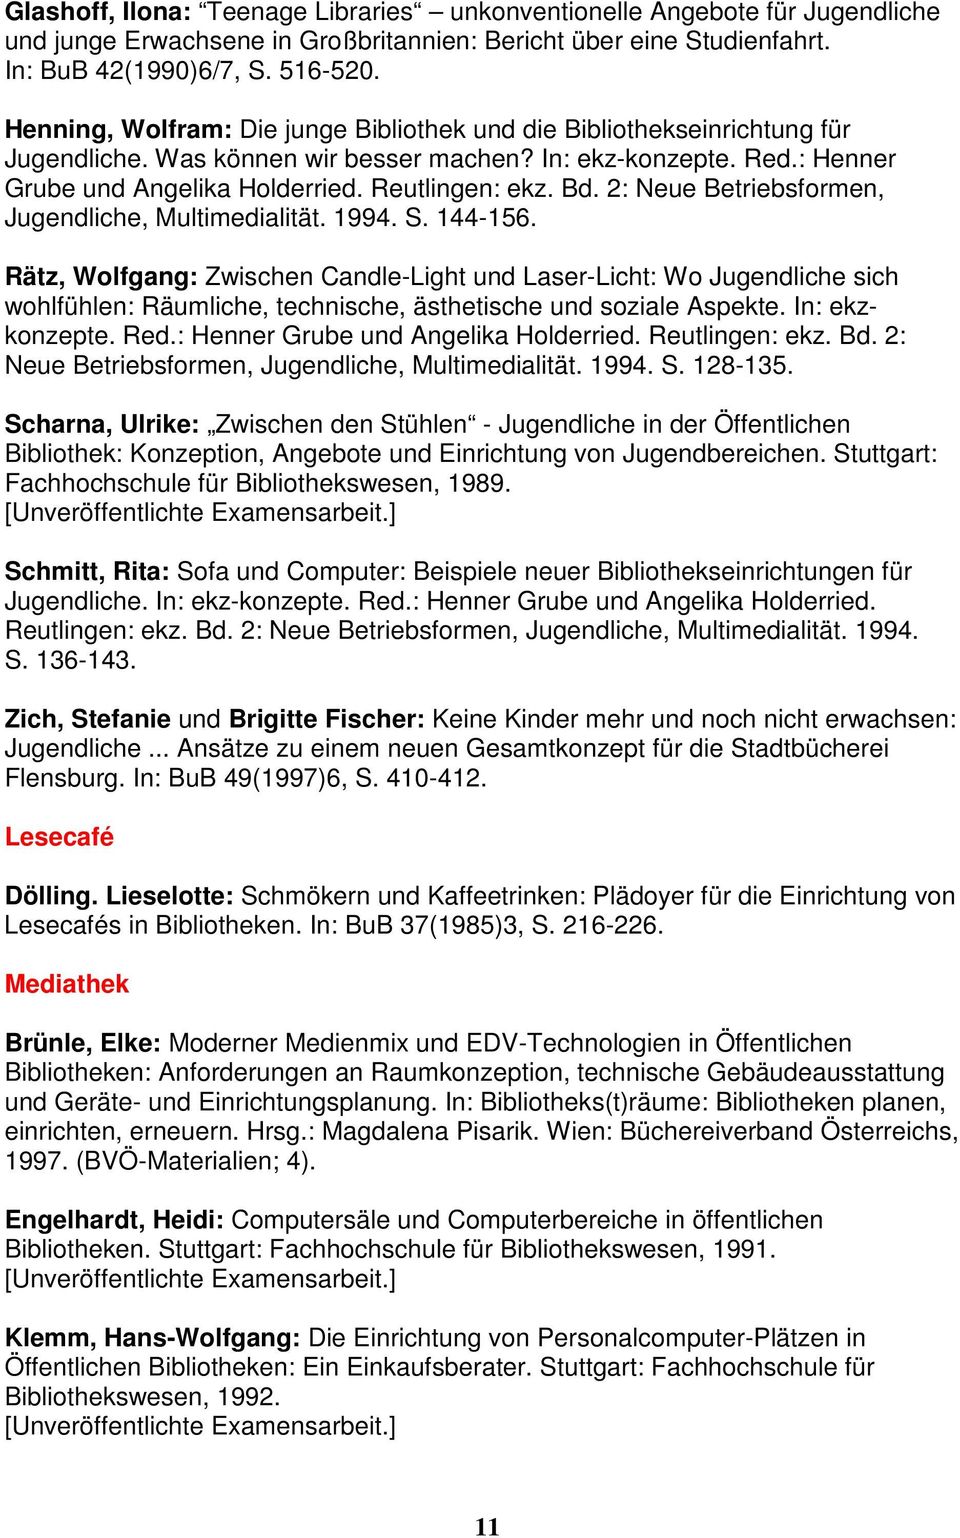 2: Neue Betriebsformen, Jugendliche, Multimedialität. 1994. S. 144-156.